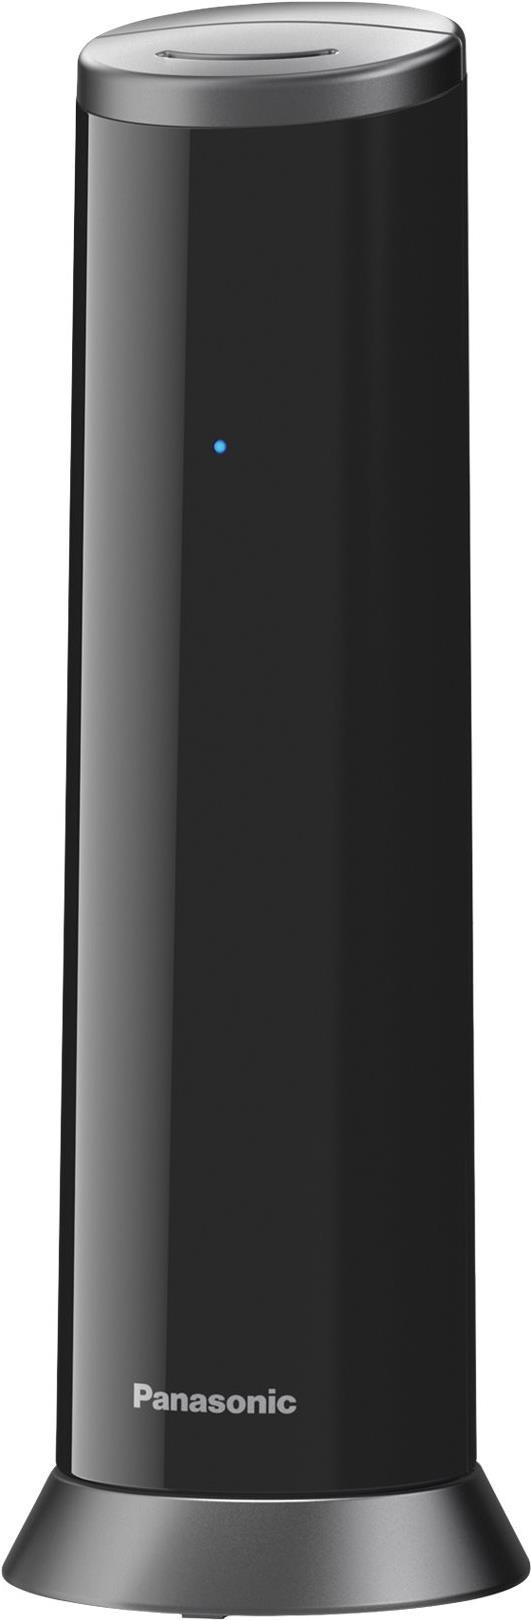 Panasonic KX-TGK220 - Schnurlostelefon - Anrufbeantworter mit Rufnummernanzeige - DECTGAP - Schwarz von Panasonic